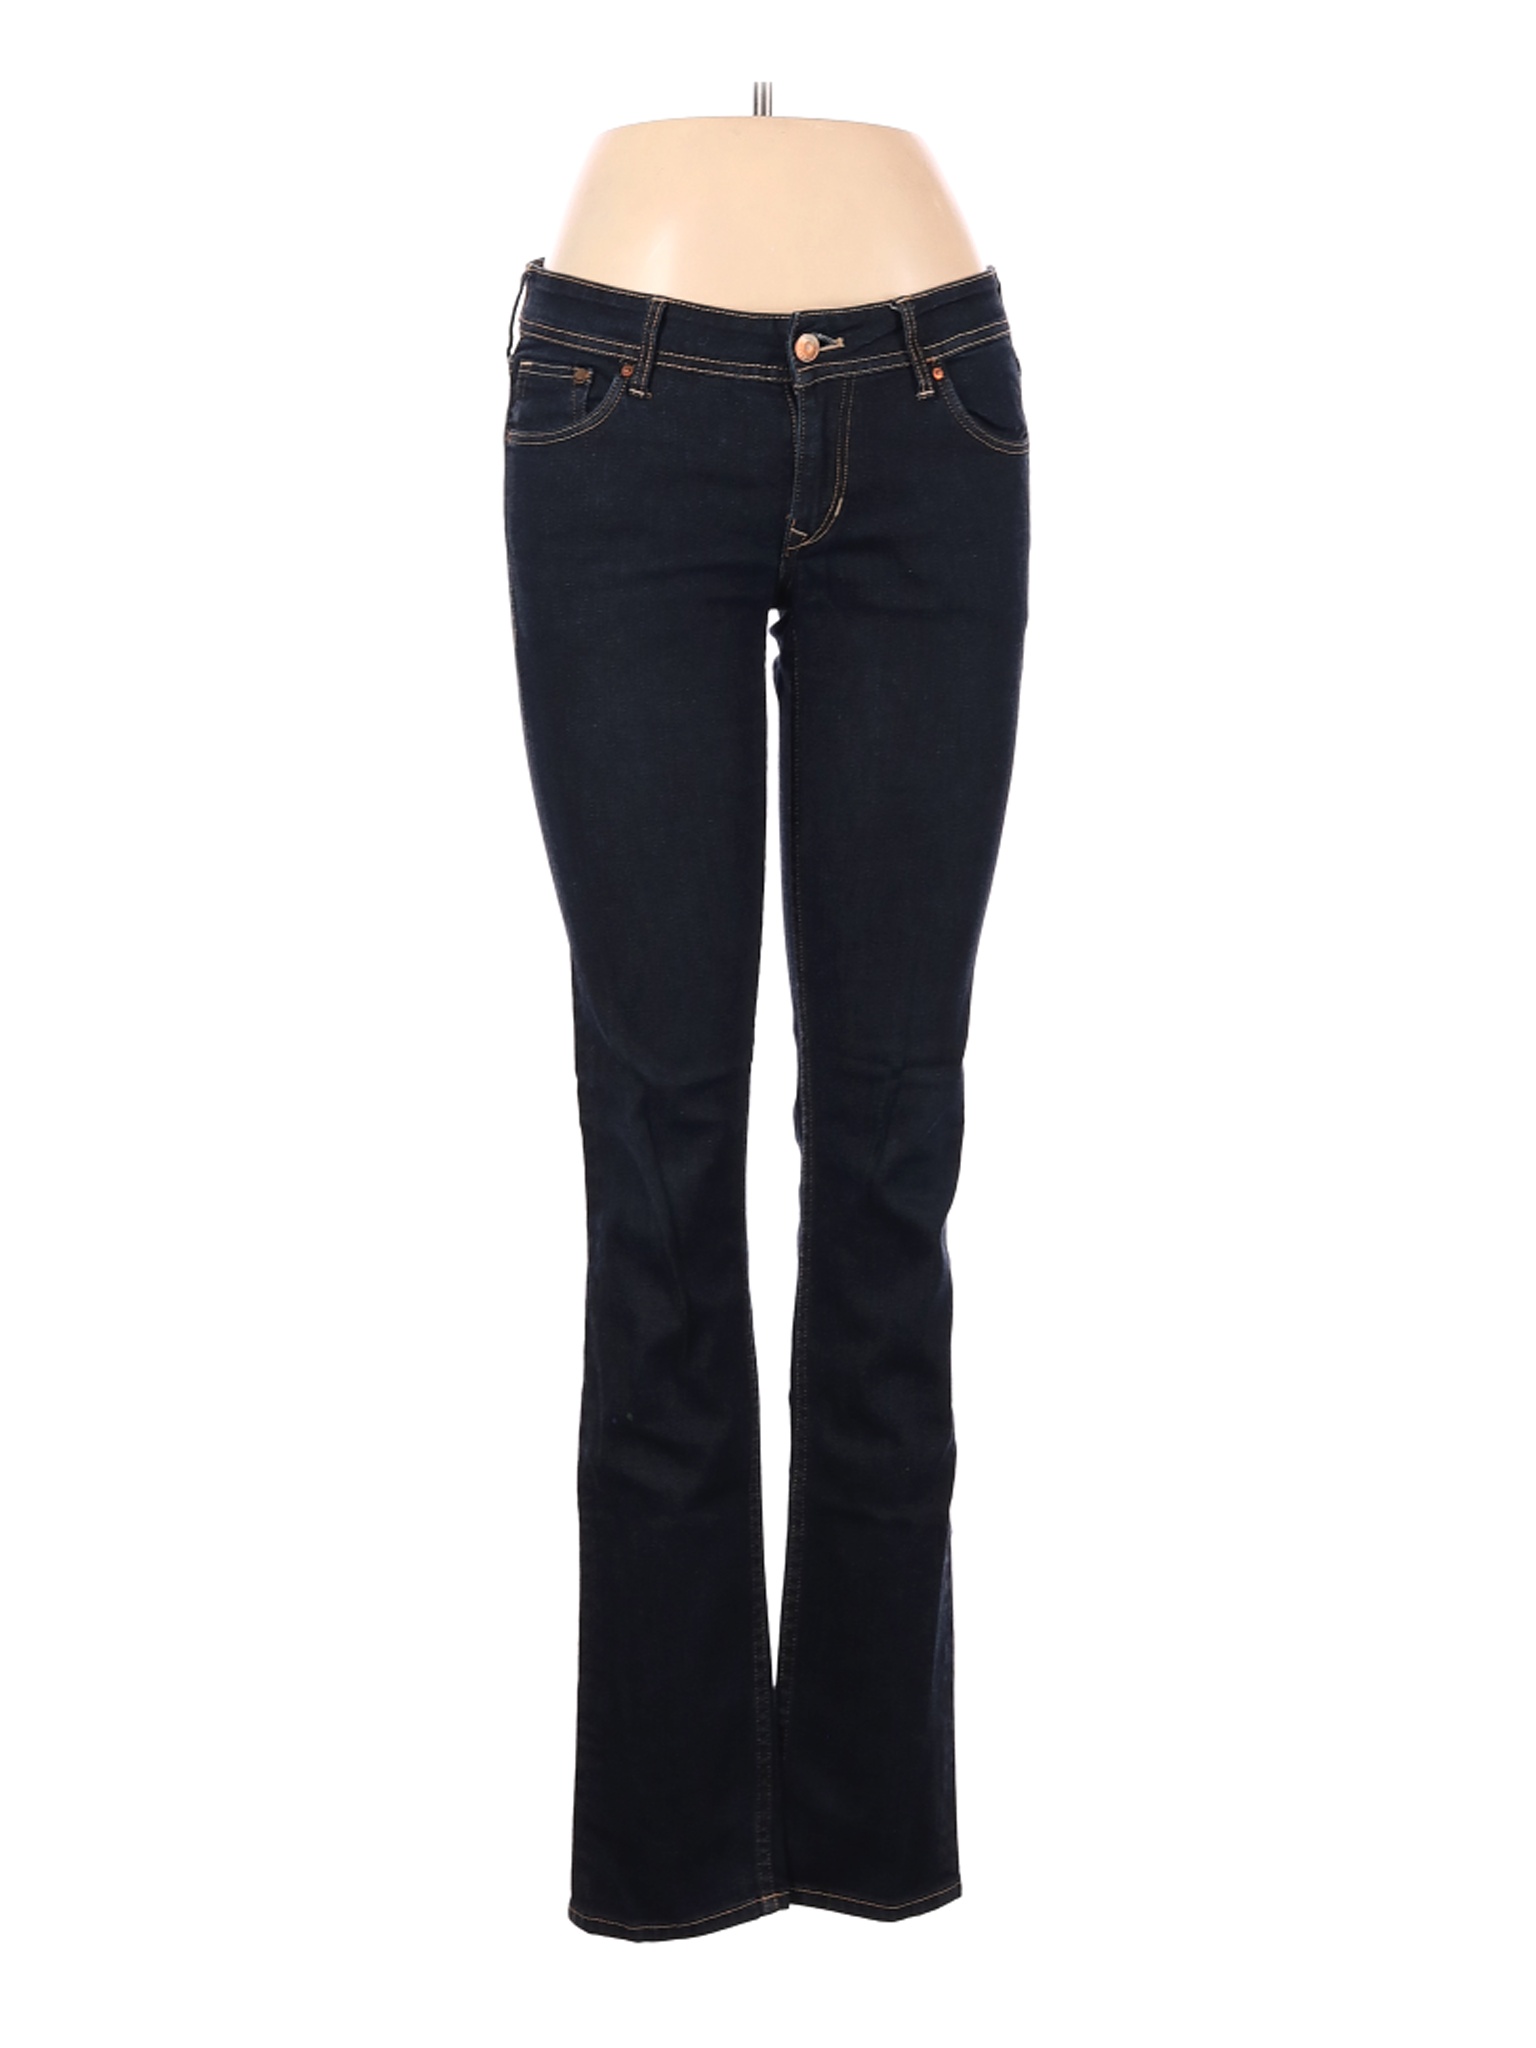 &Denim by H&M Women Black Jeans 28W | eBay